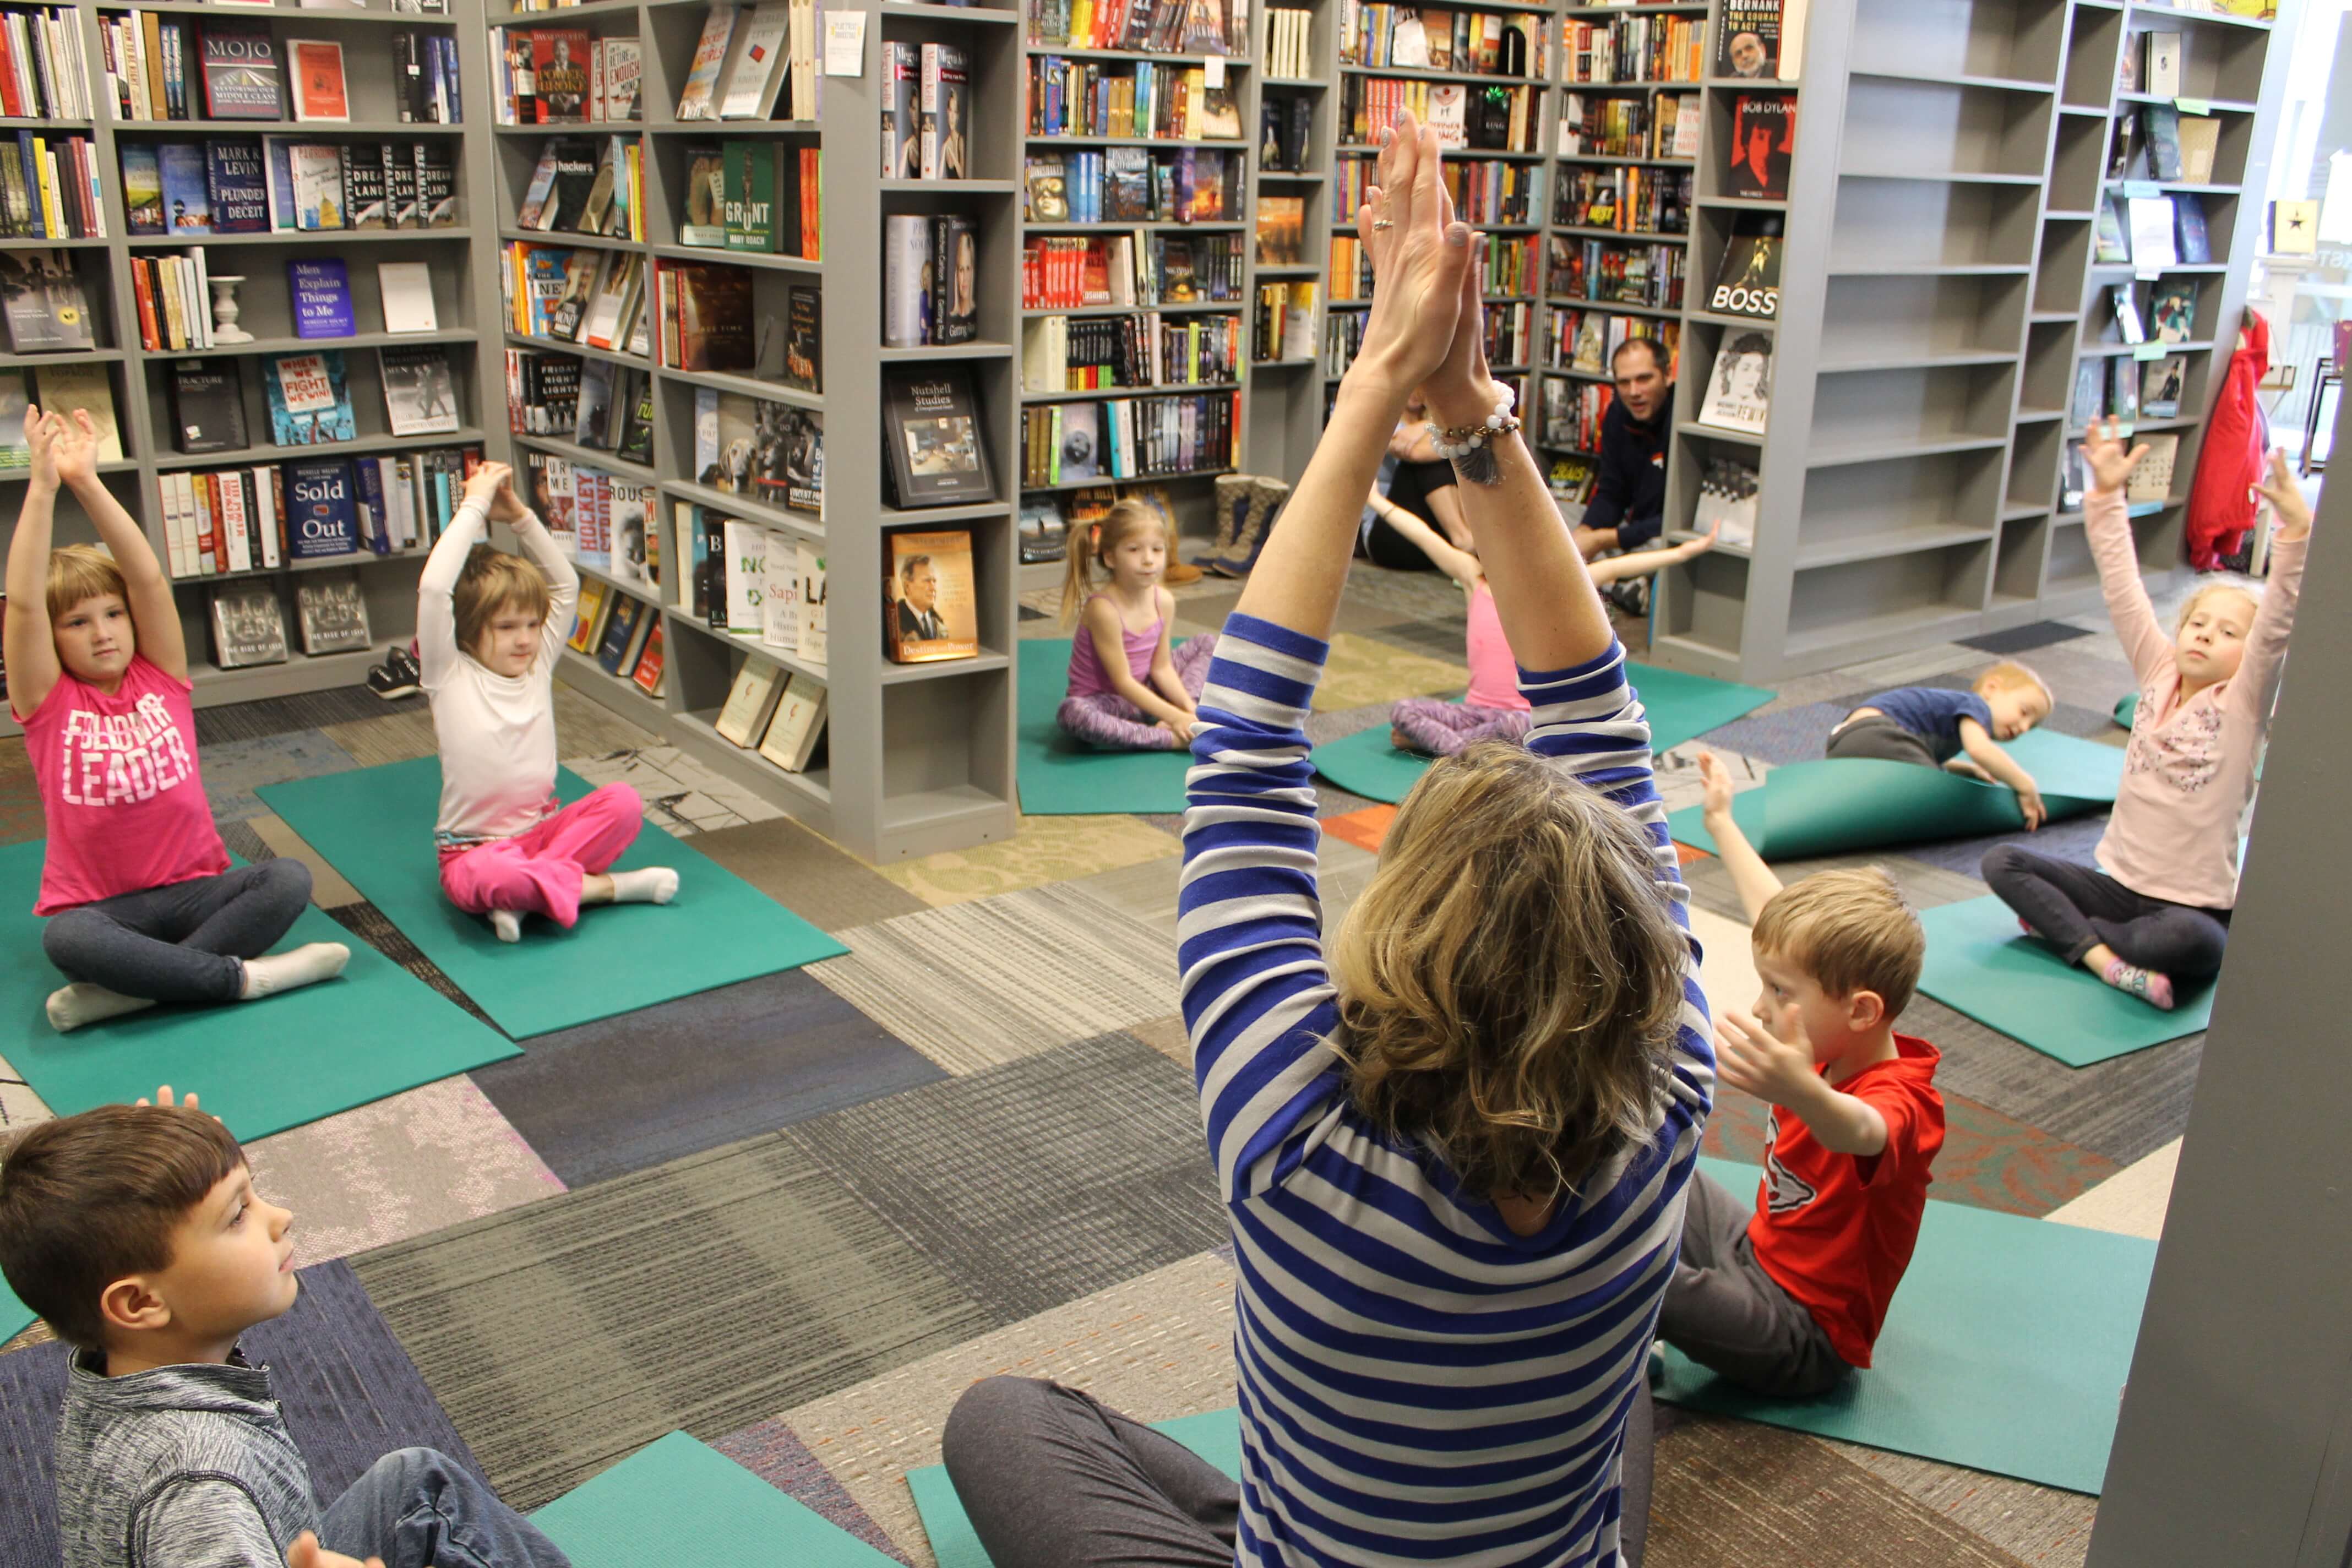 Partner Yoga for Kids Class - Go Go Yoga For Kids | Yoga 